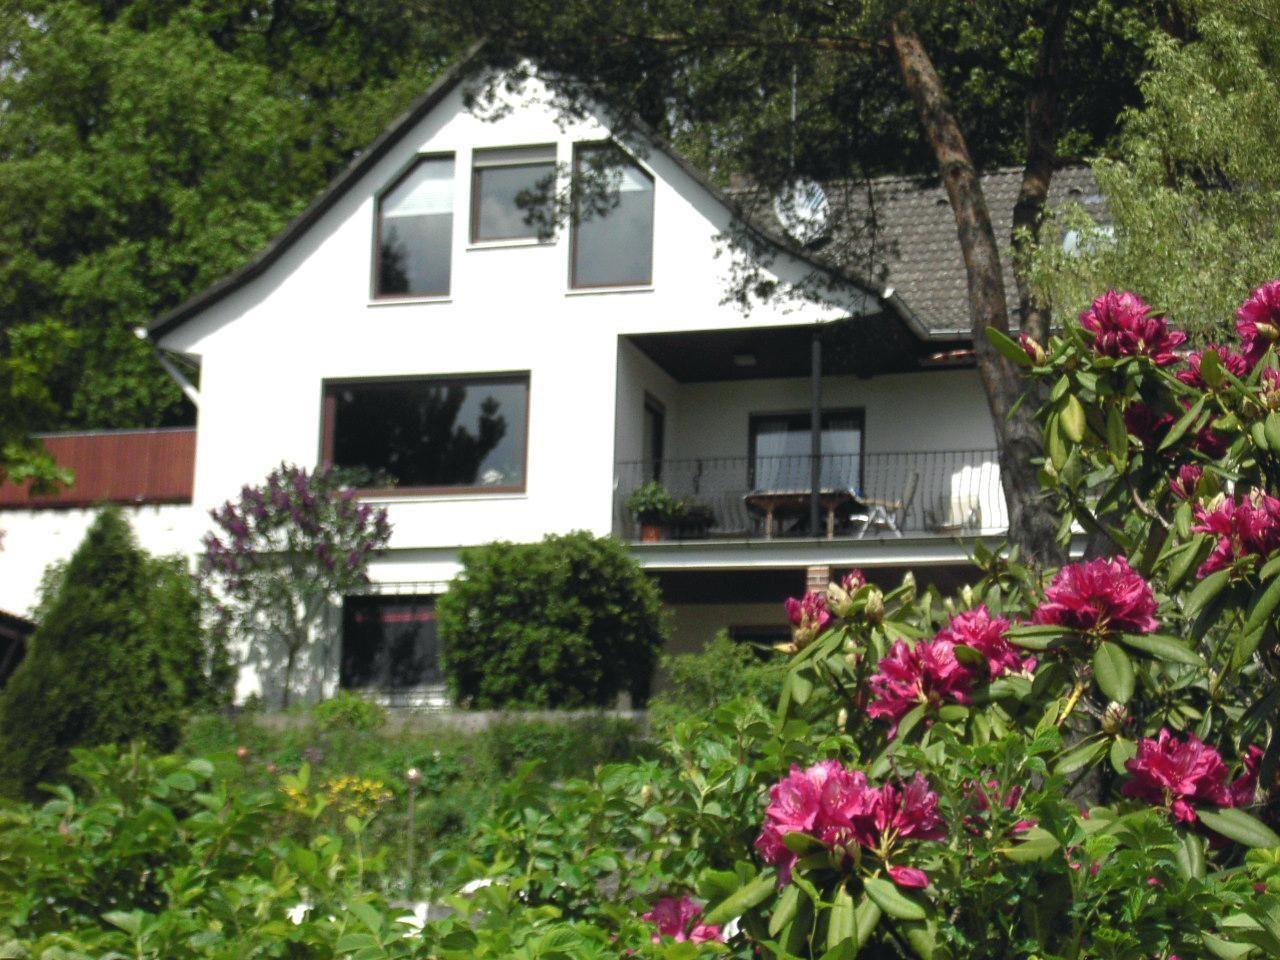 Ferienhaus in Obernsees mit Garten, Terrasse und G Ferienwohnung in Deutschland